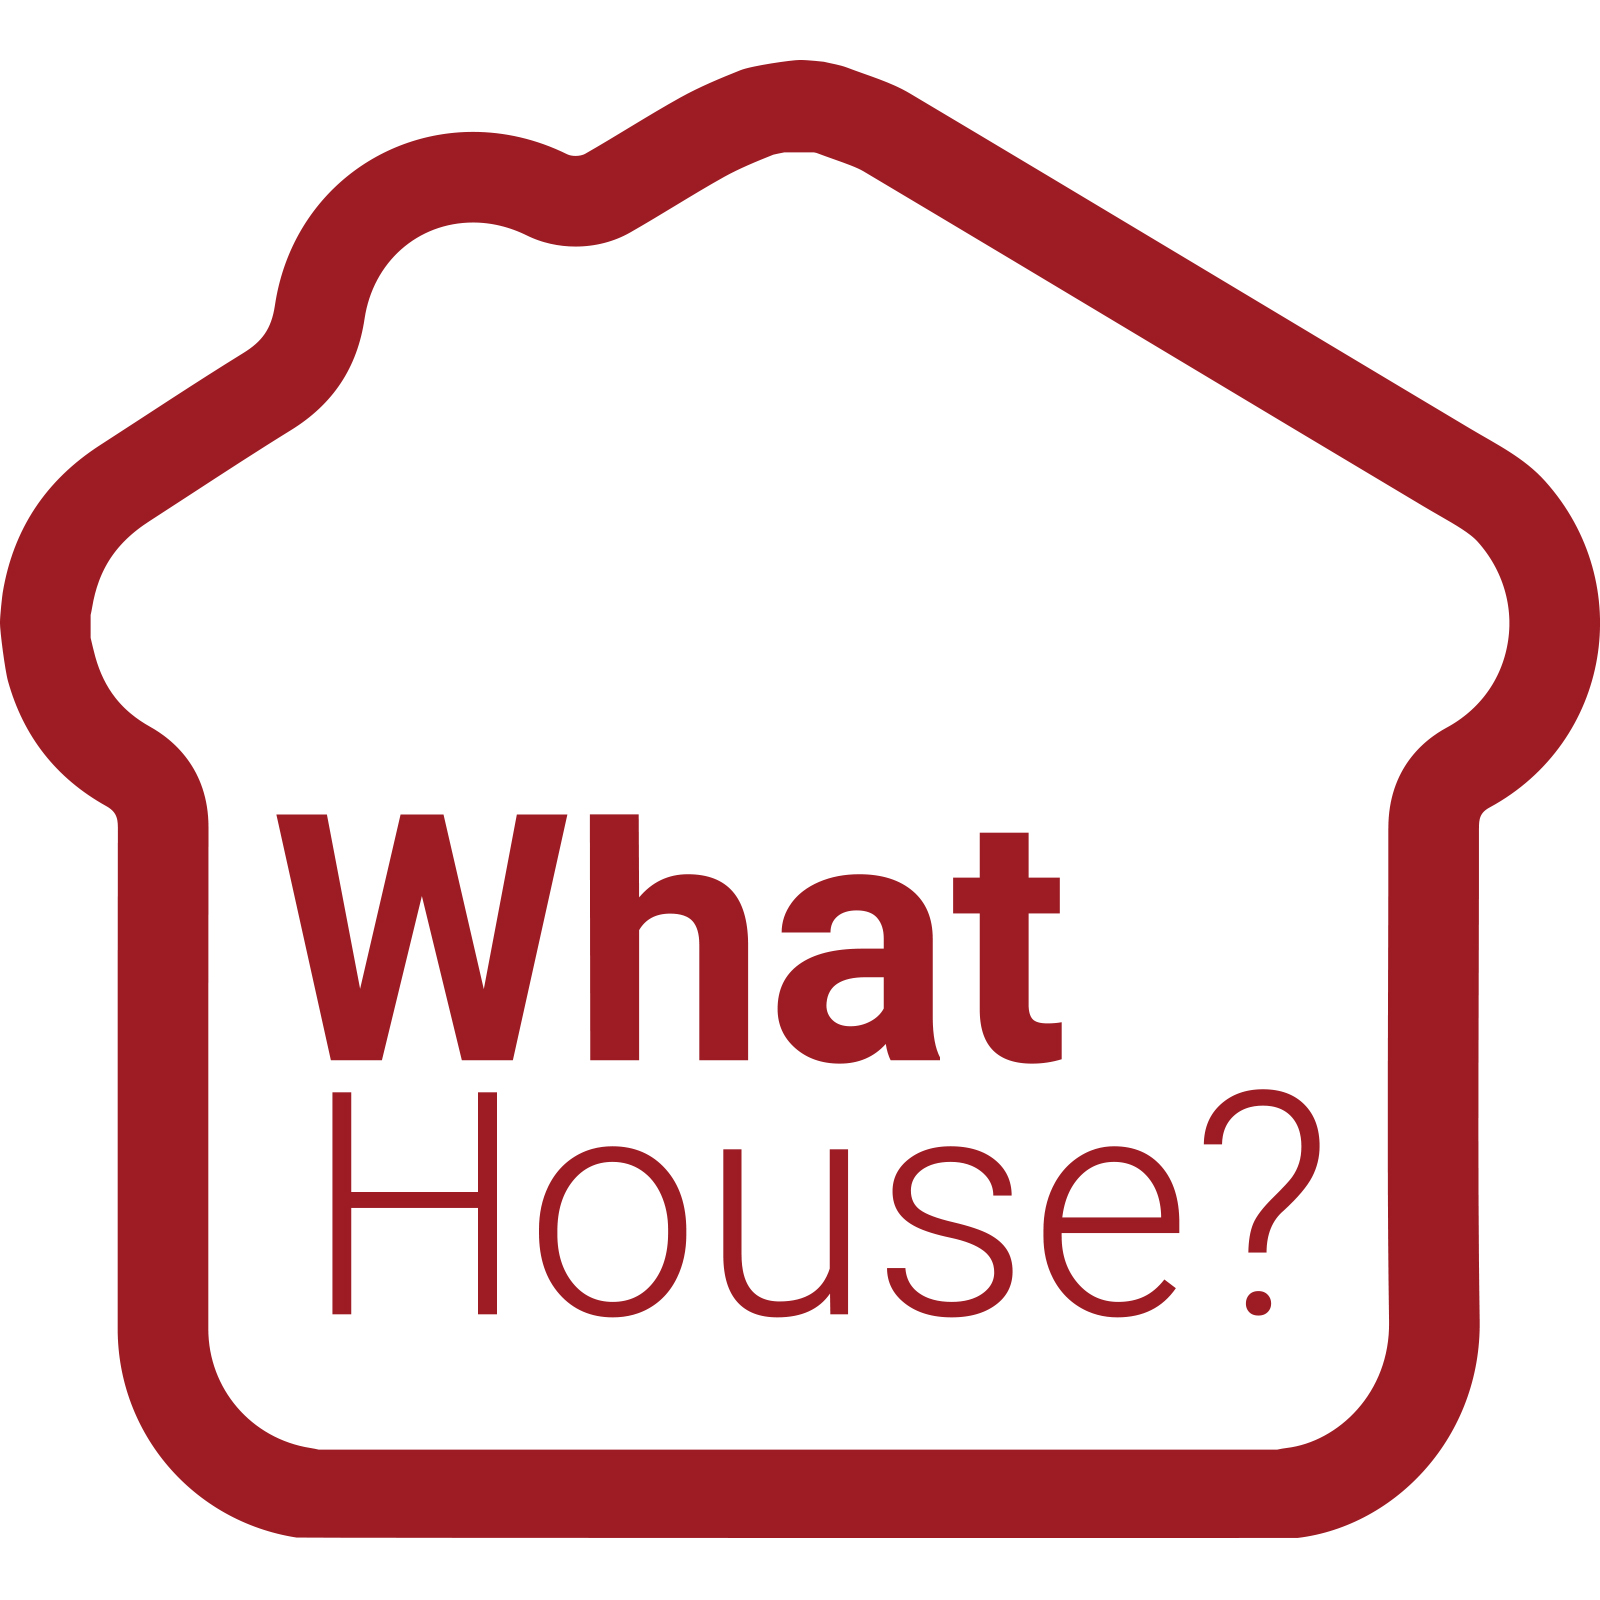 WhatHouse? logo